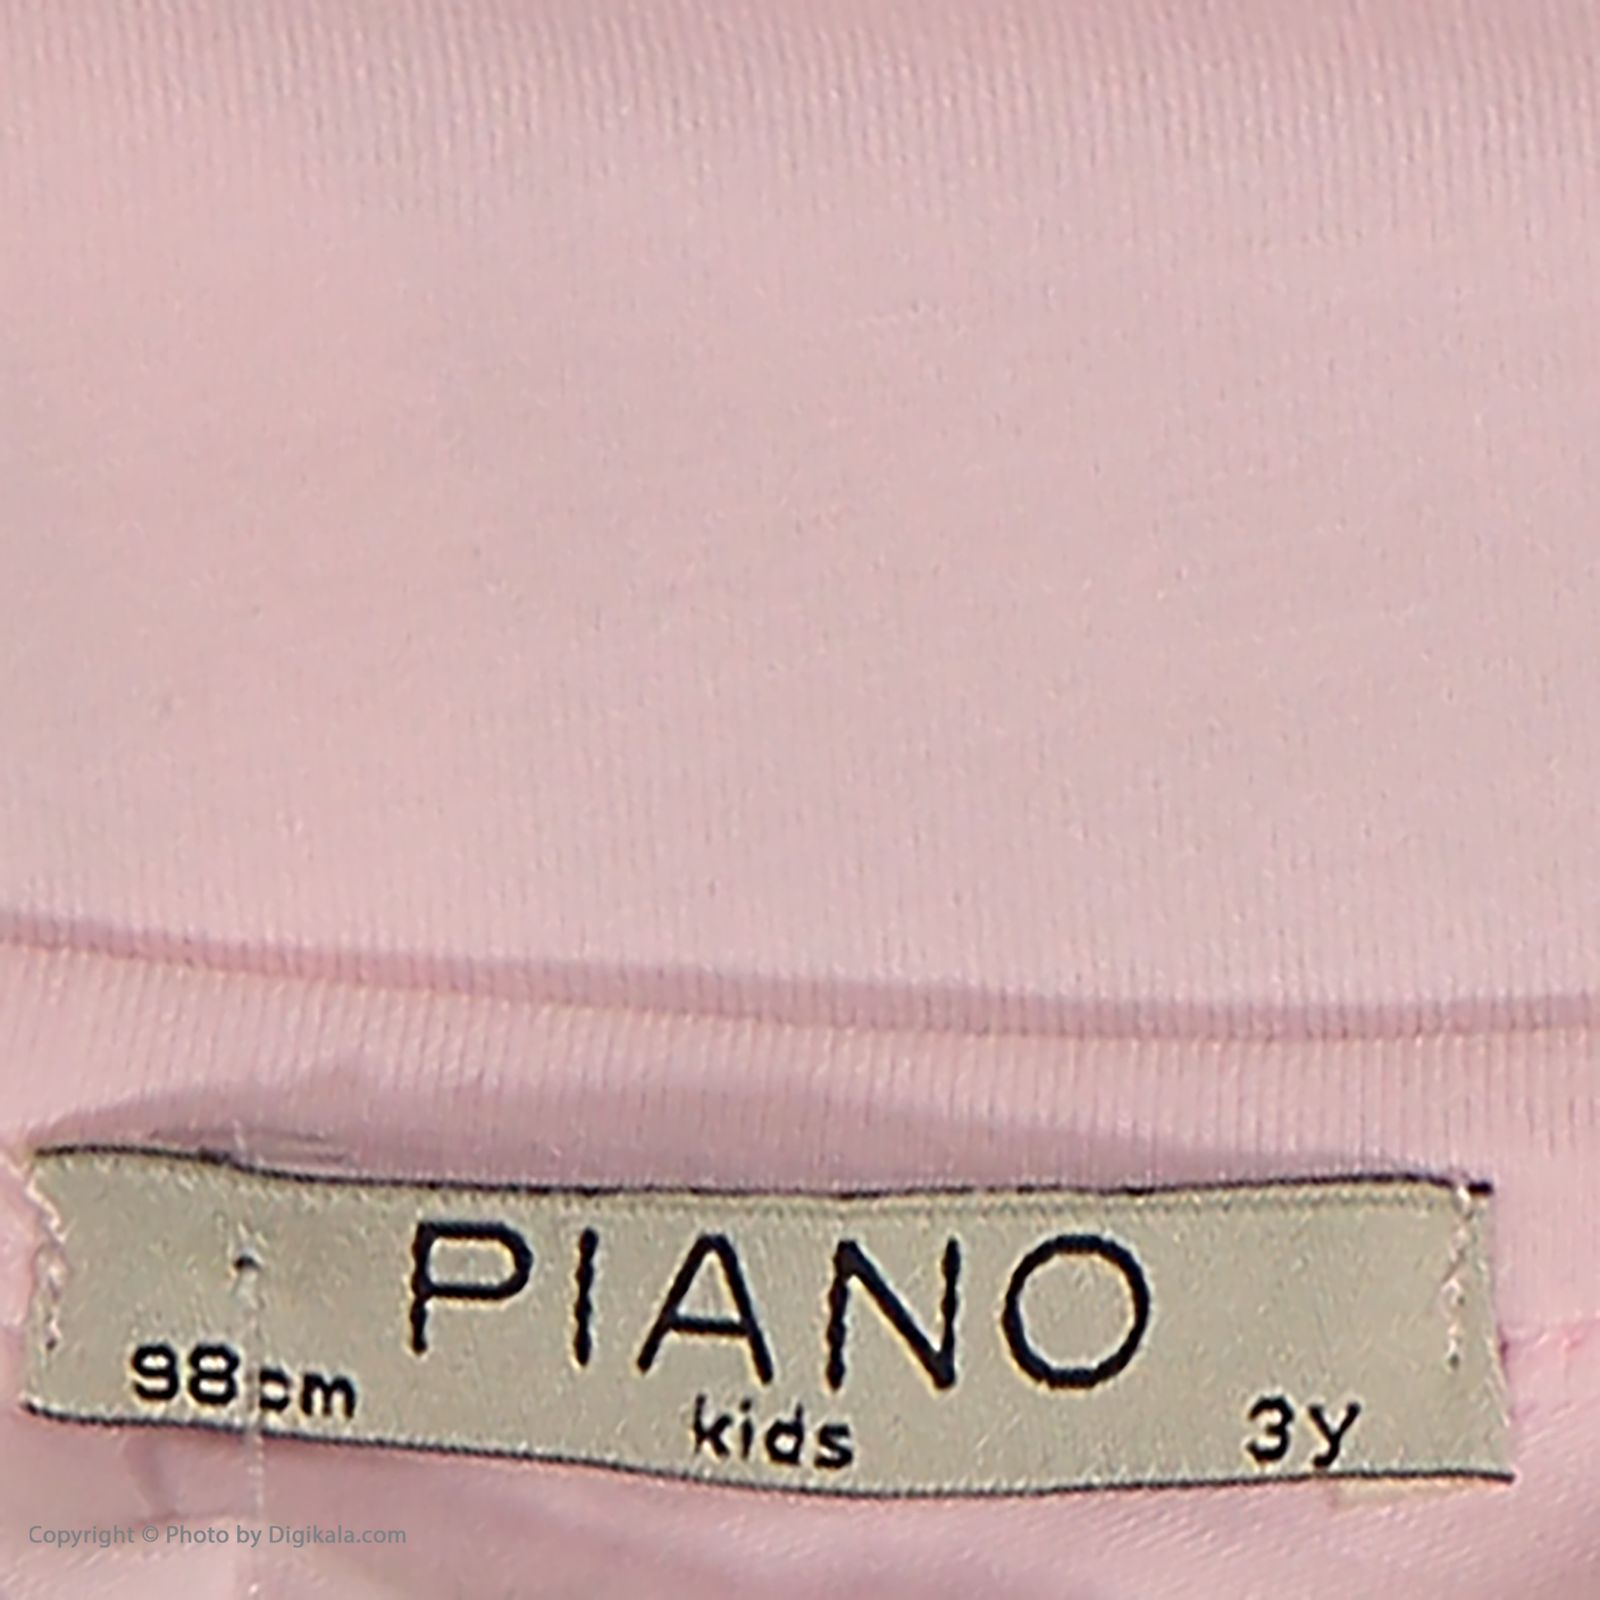 ست تی شرت و شلوار دخترانه پیانو مدل 1856-81 -  - 5